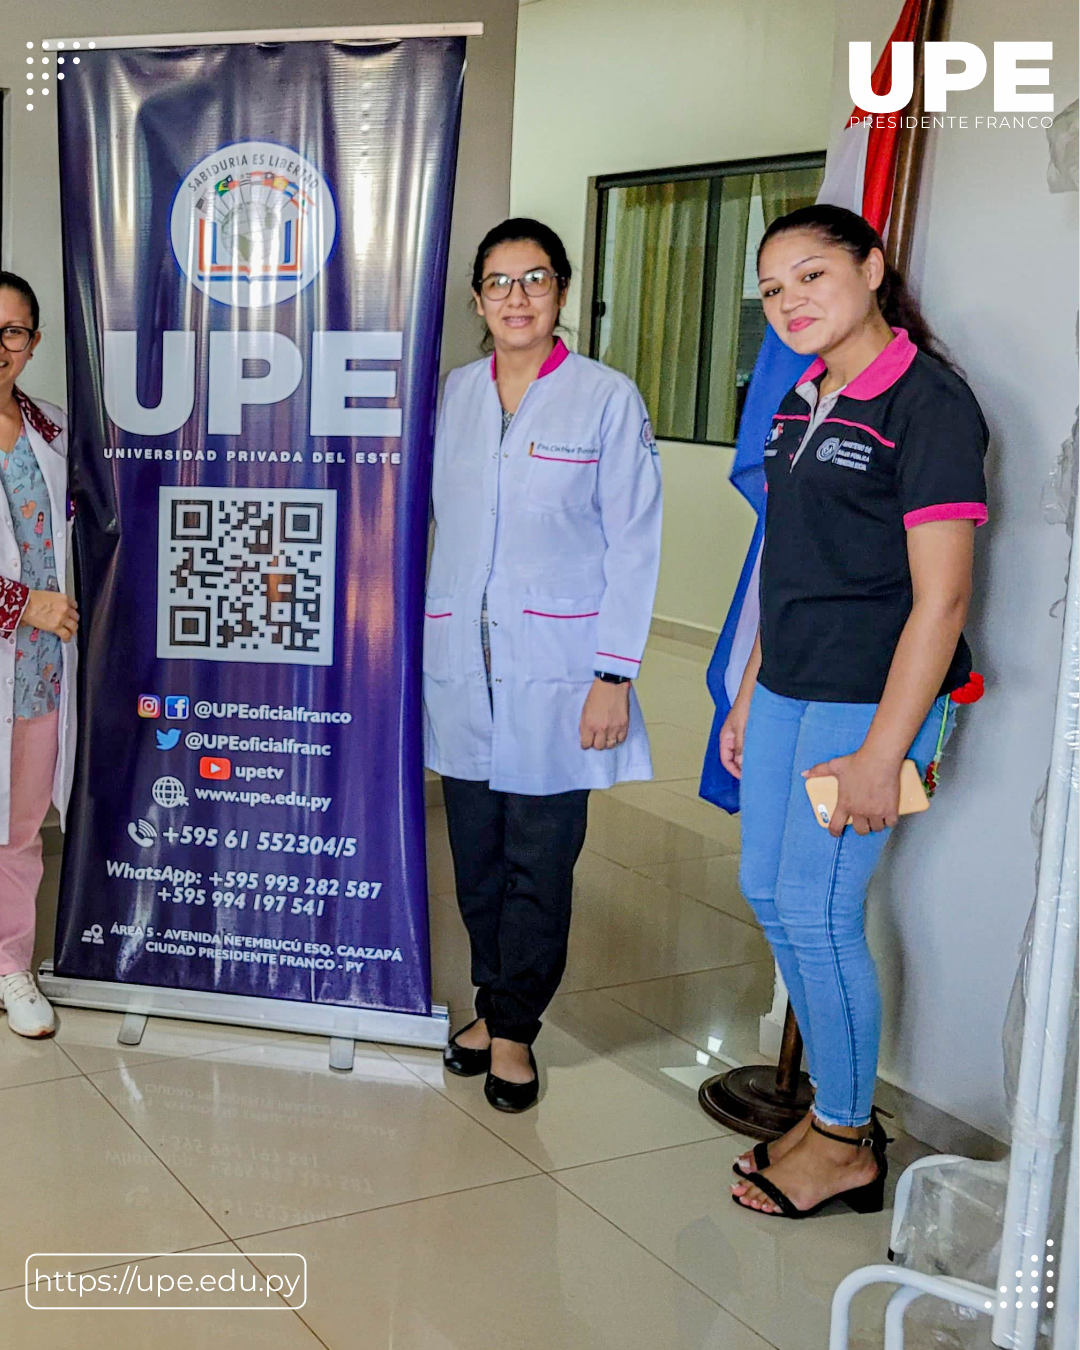 UPE entrega Contrapartida al Hospital Distrital de Hernandarias